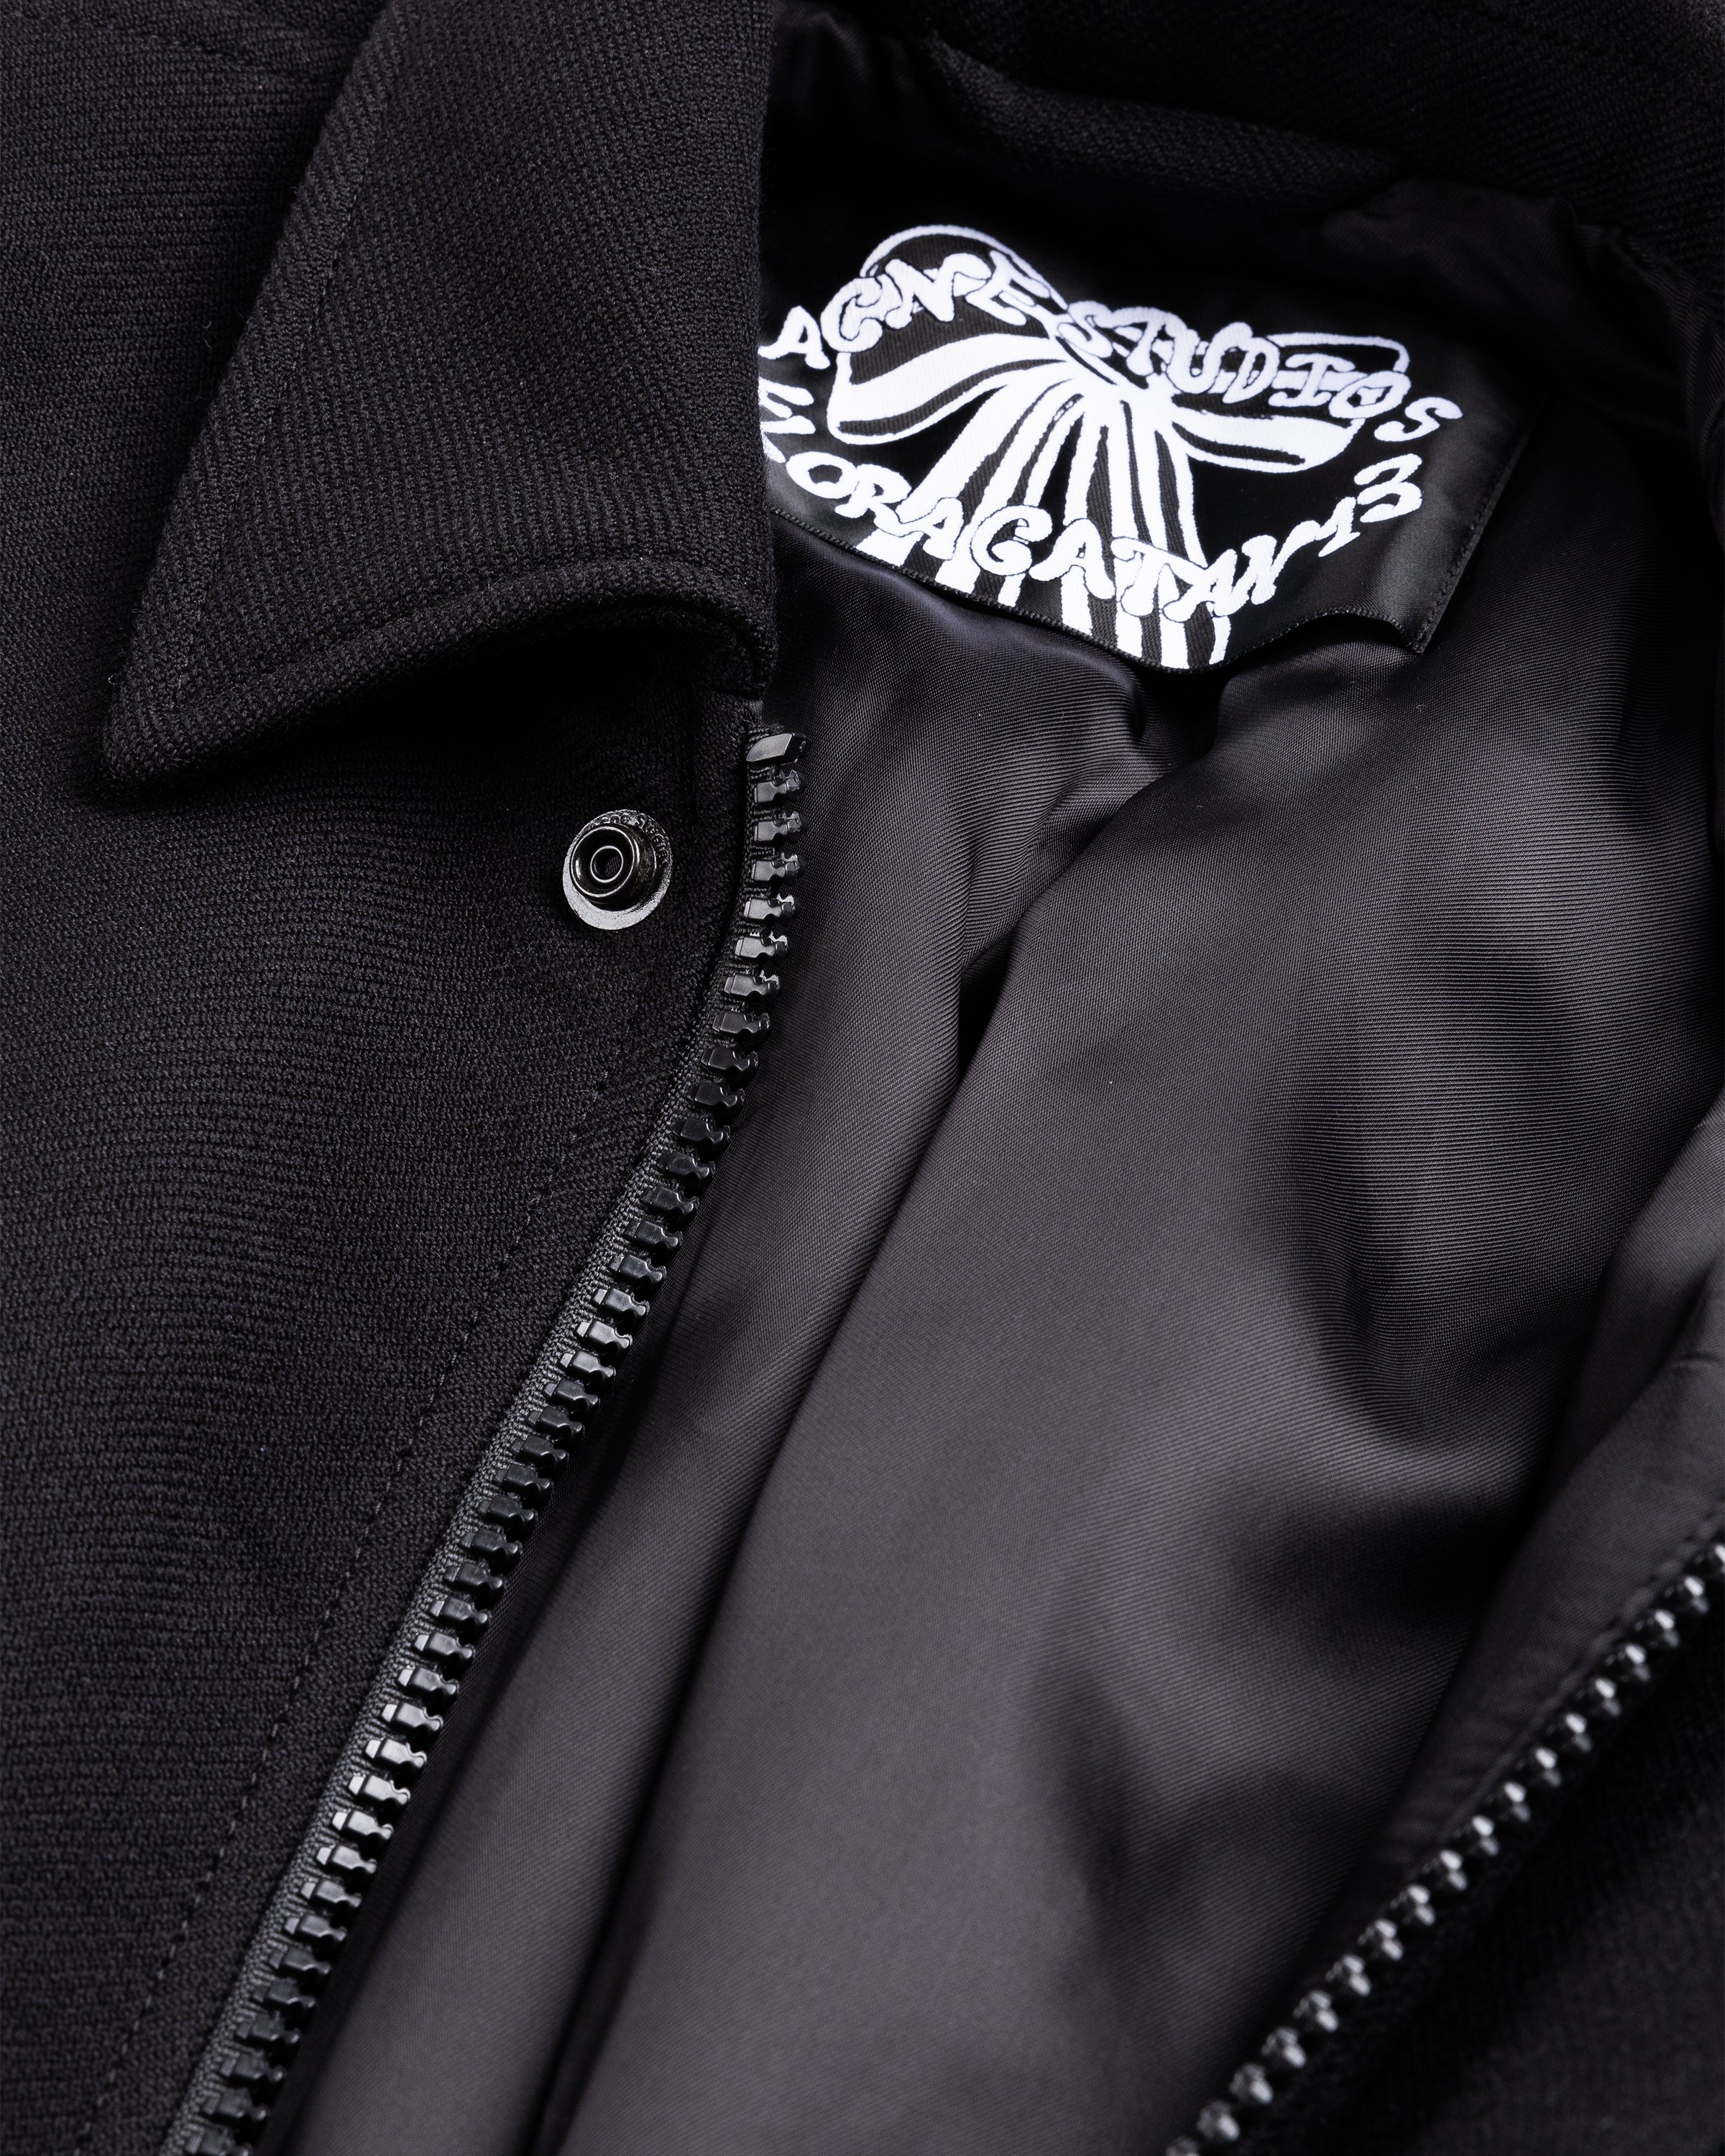 Acne Studios - Bomber Jacket Black - Clothing - Black - Image 5